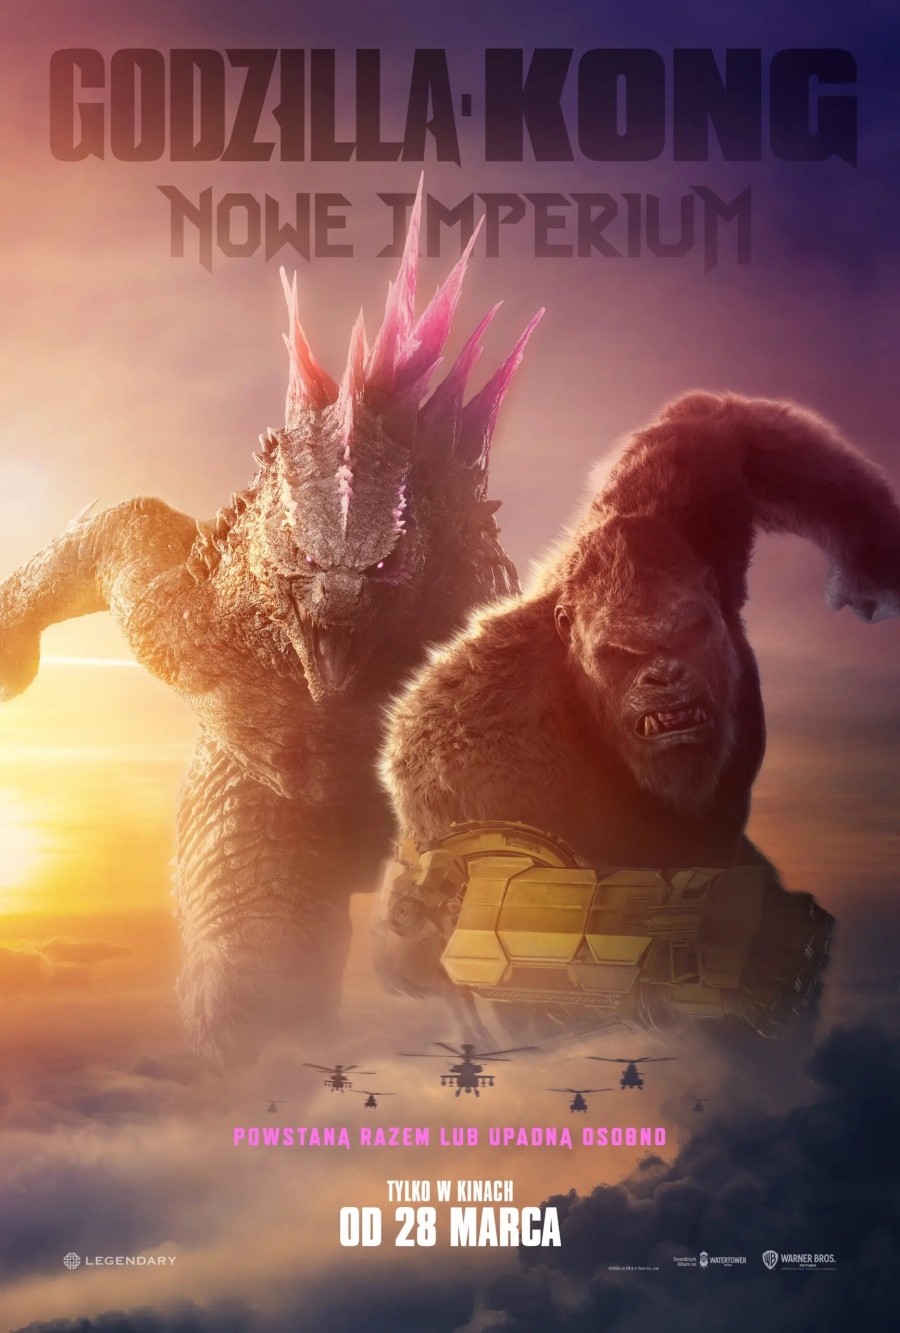 &quot;Godzilla i Kong: Nowe Imperium&quot; (RÓŻNE WERSJE)